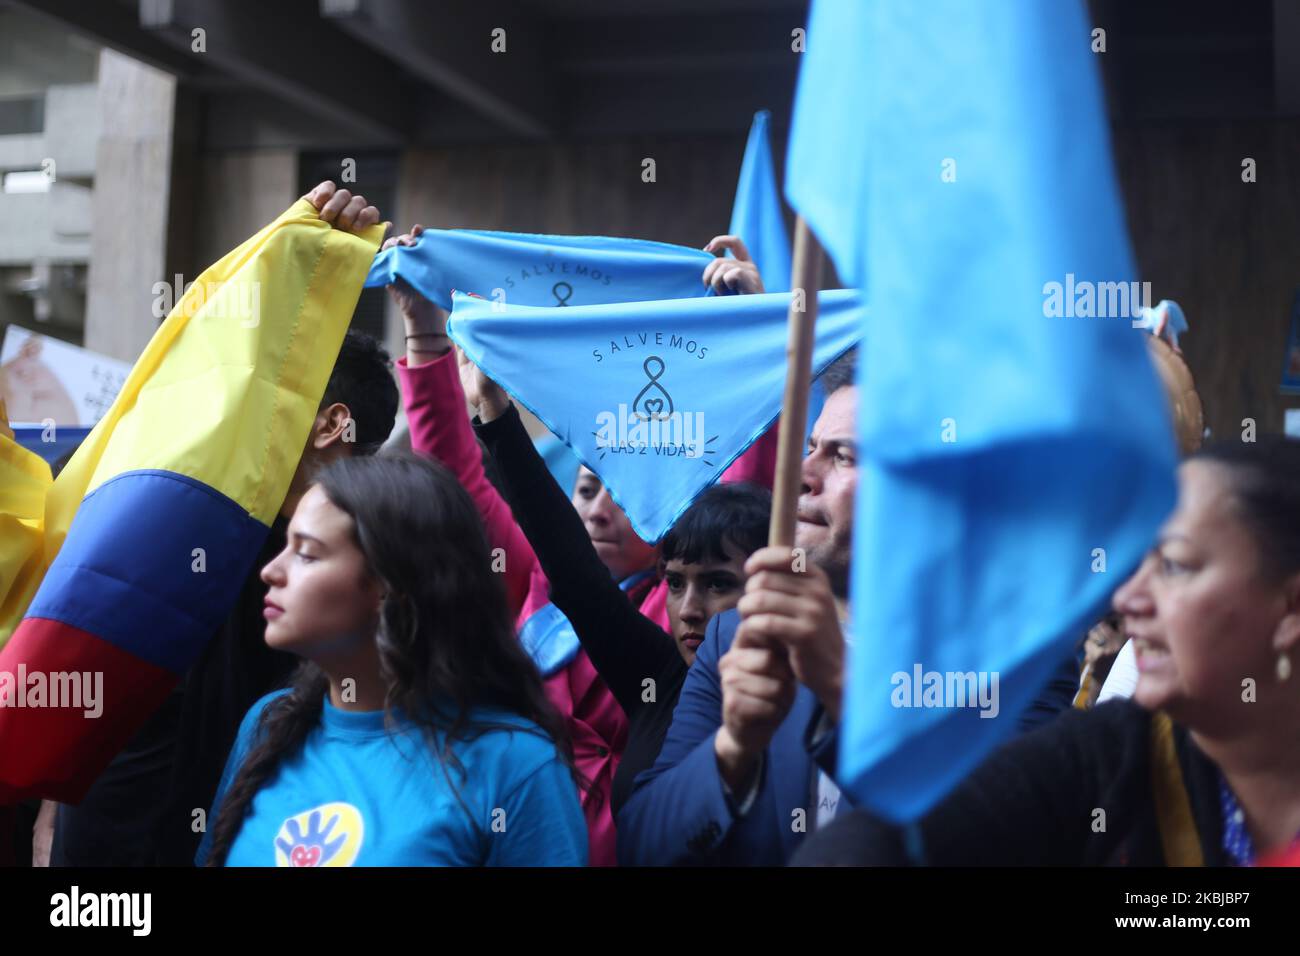 Anti-Abtreibungsaktivisten protestieren am 2. März 2020 vor dem kolumbianischen Verfassungsgericht in Bogota, Kolumbien. Während der Debatte kam es zu Protesten aufgrund des Vorschlags eines Richters, die Abtreibung in den ersten 16 Schwangerschaftswochen zu entkriminalisieren, und wegen 2 Klagen, die beantragt wurden, um dieses Verfahren vollständig zu bestrafen. (Foto von Daniel Garzon Herazo/NurPhoto) Stockfoto